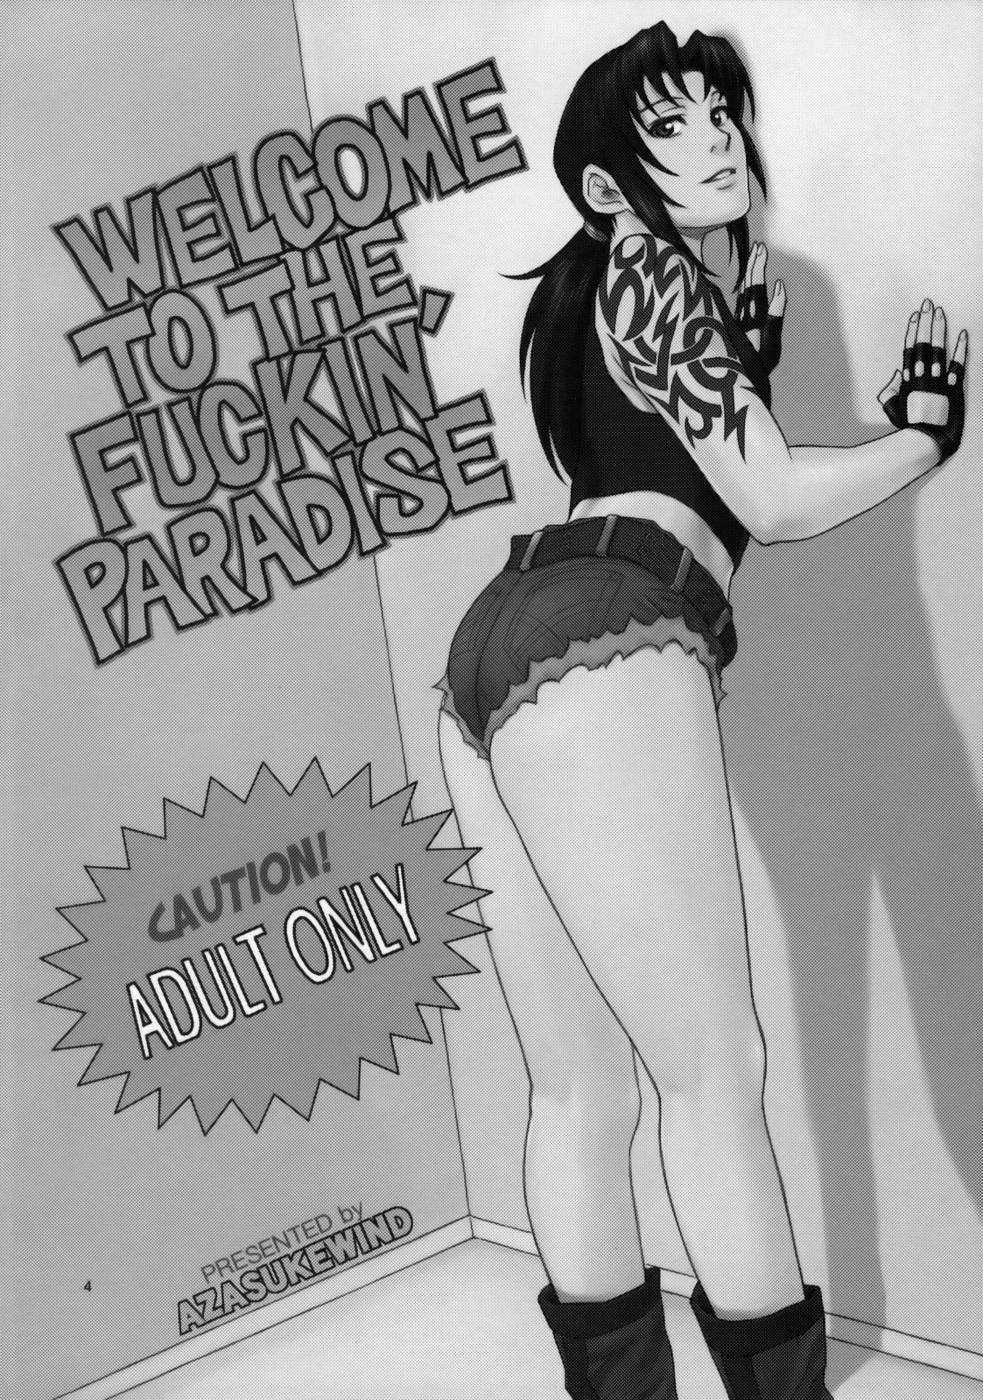 Hentai Manga Comic-WELCOME TO THE FUCKIN PARADISE-v22m-Read-2